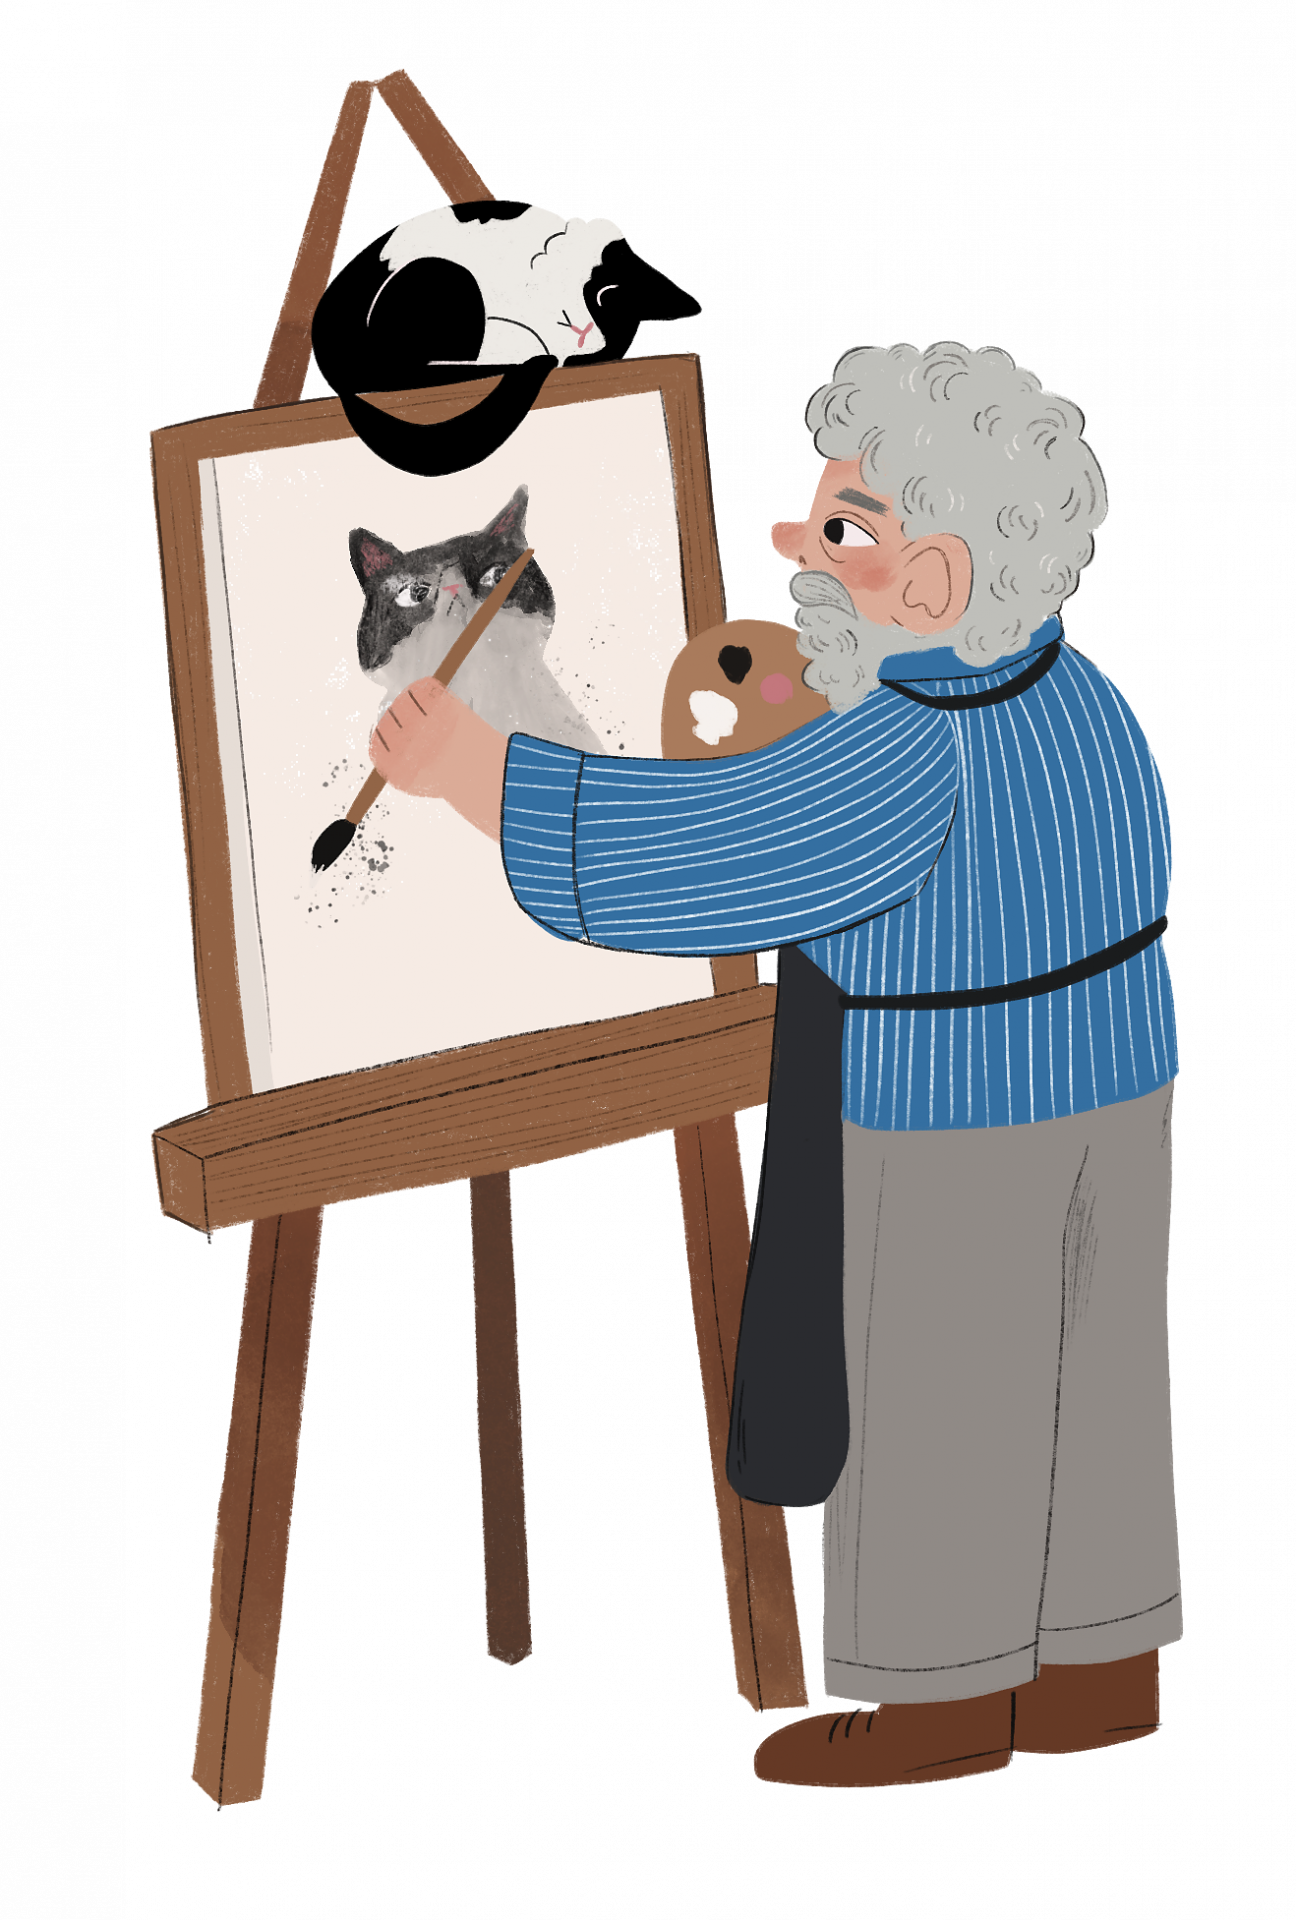 Äldre person med grått skägg, blå tröja och gråa byxor målar en tavla, tavlan står på ett staffli